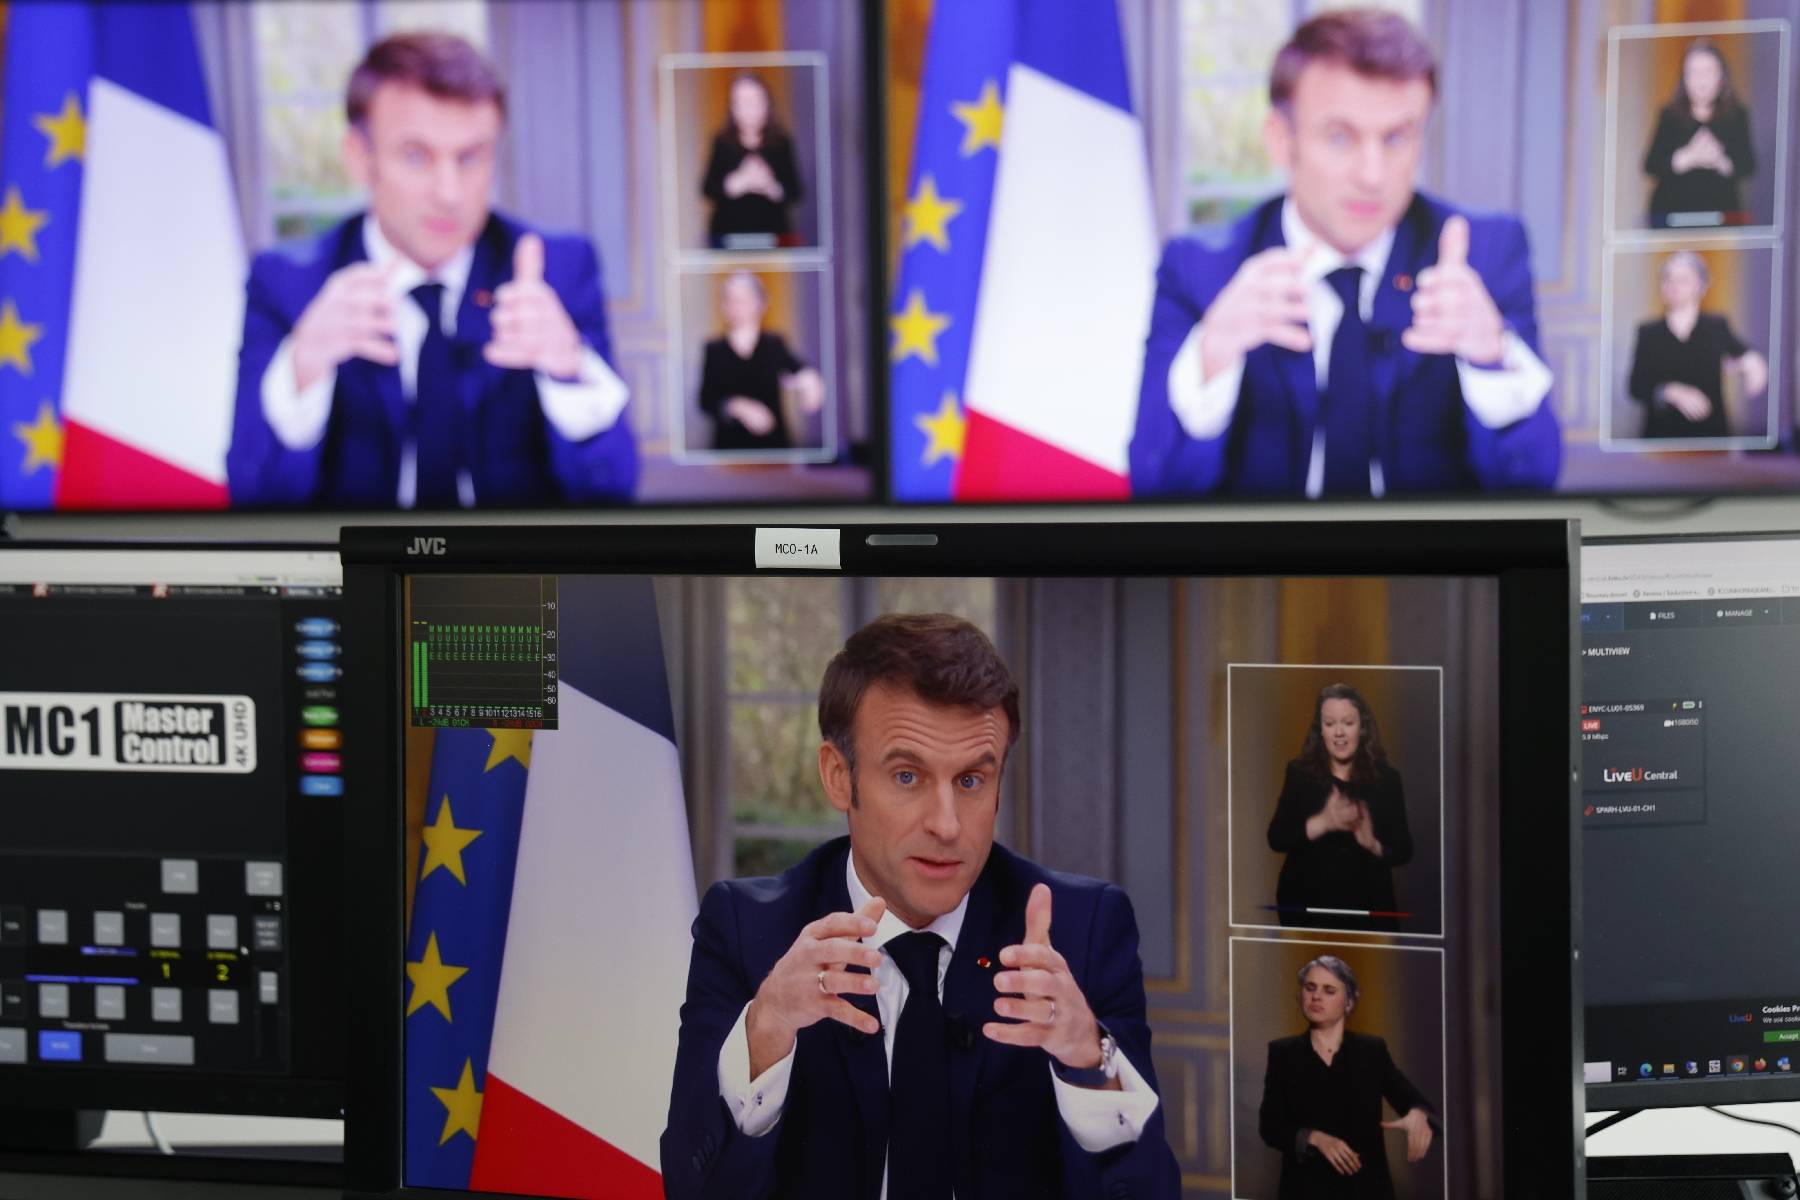 Réforme des retraites, échange avec les Français, suite du quinquennat... que faut-il attendre de l'allocution d'Emmanuel Macron ?